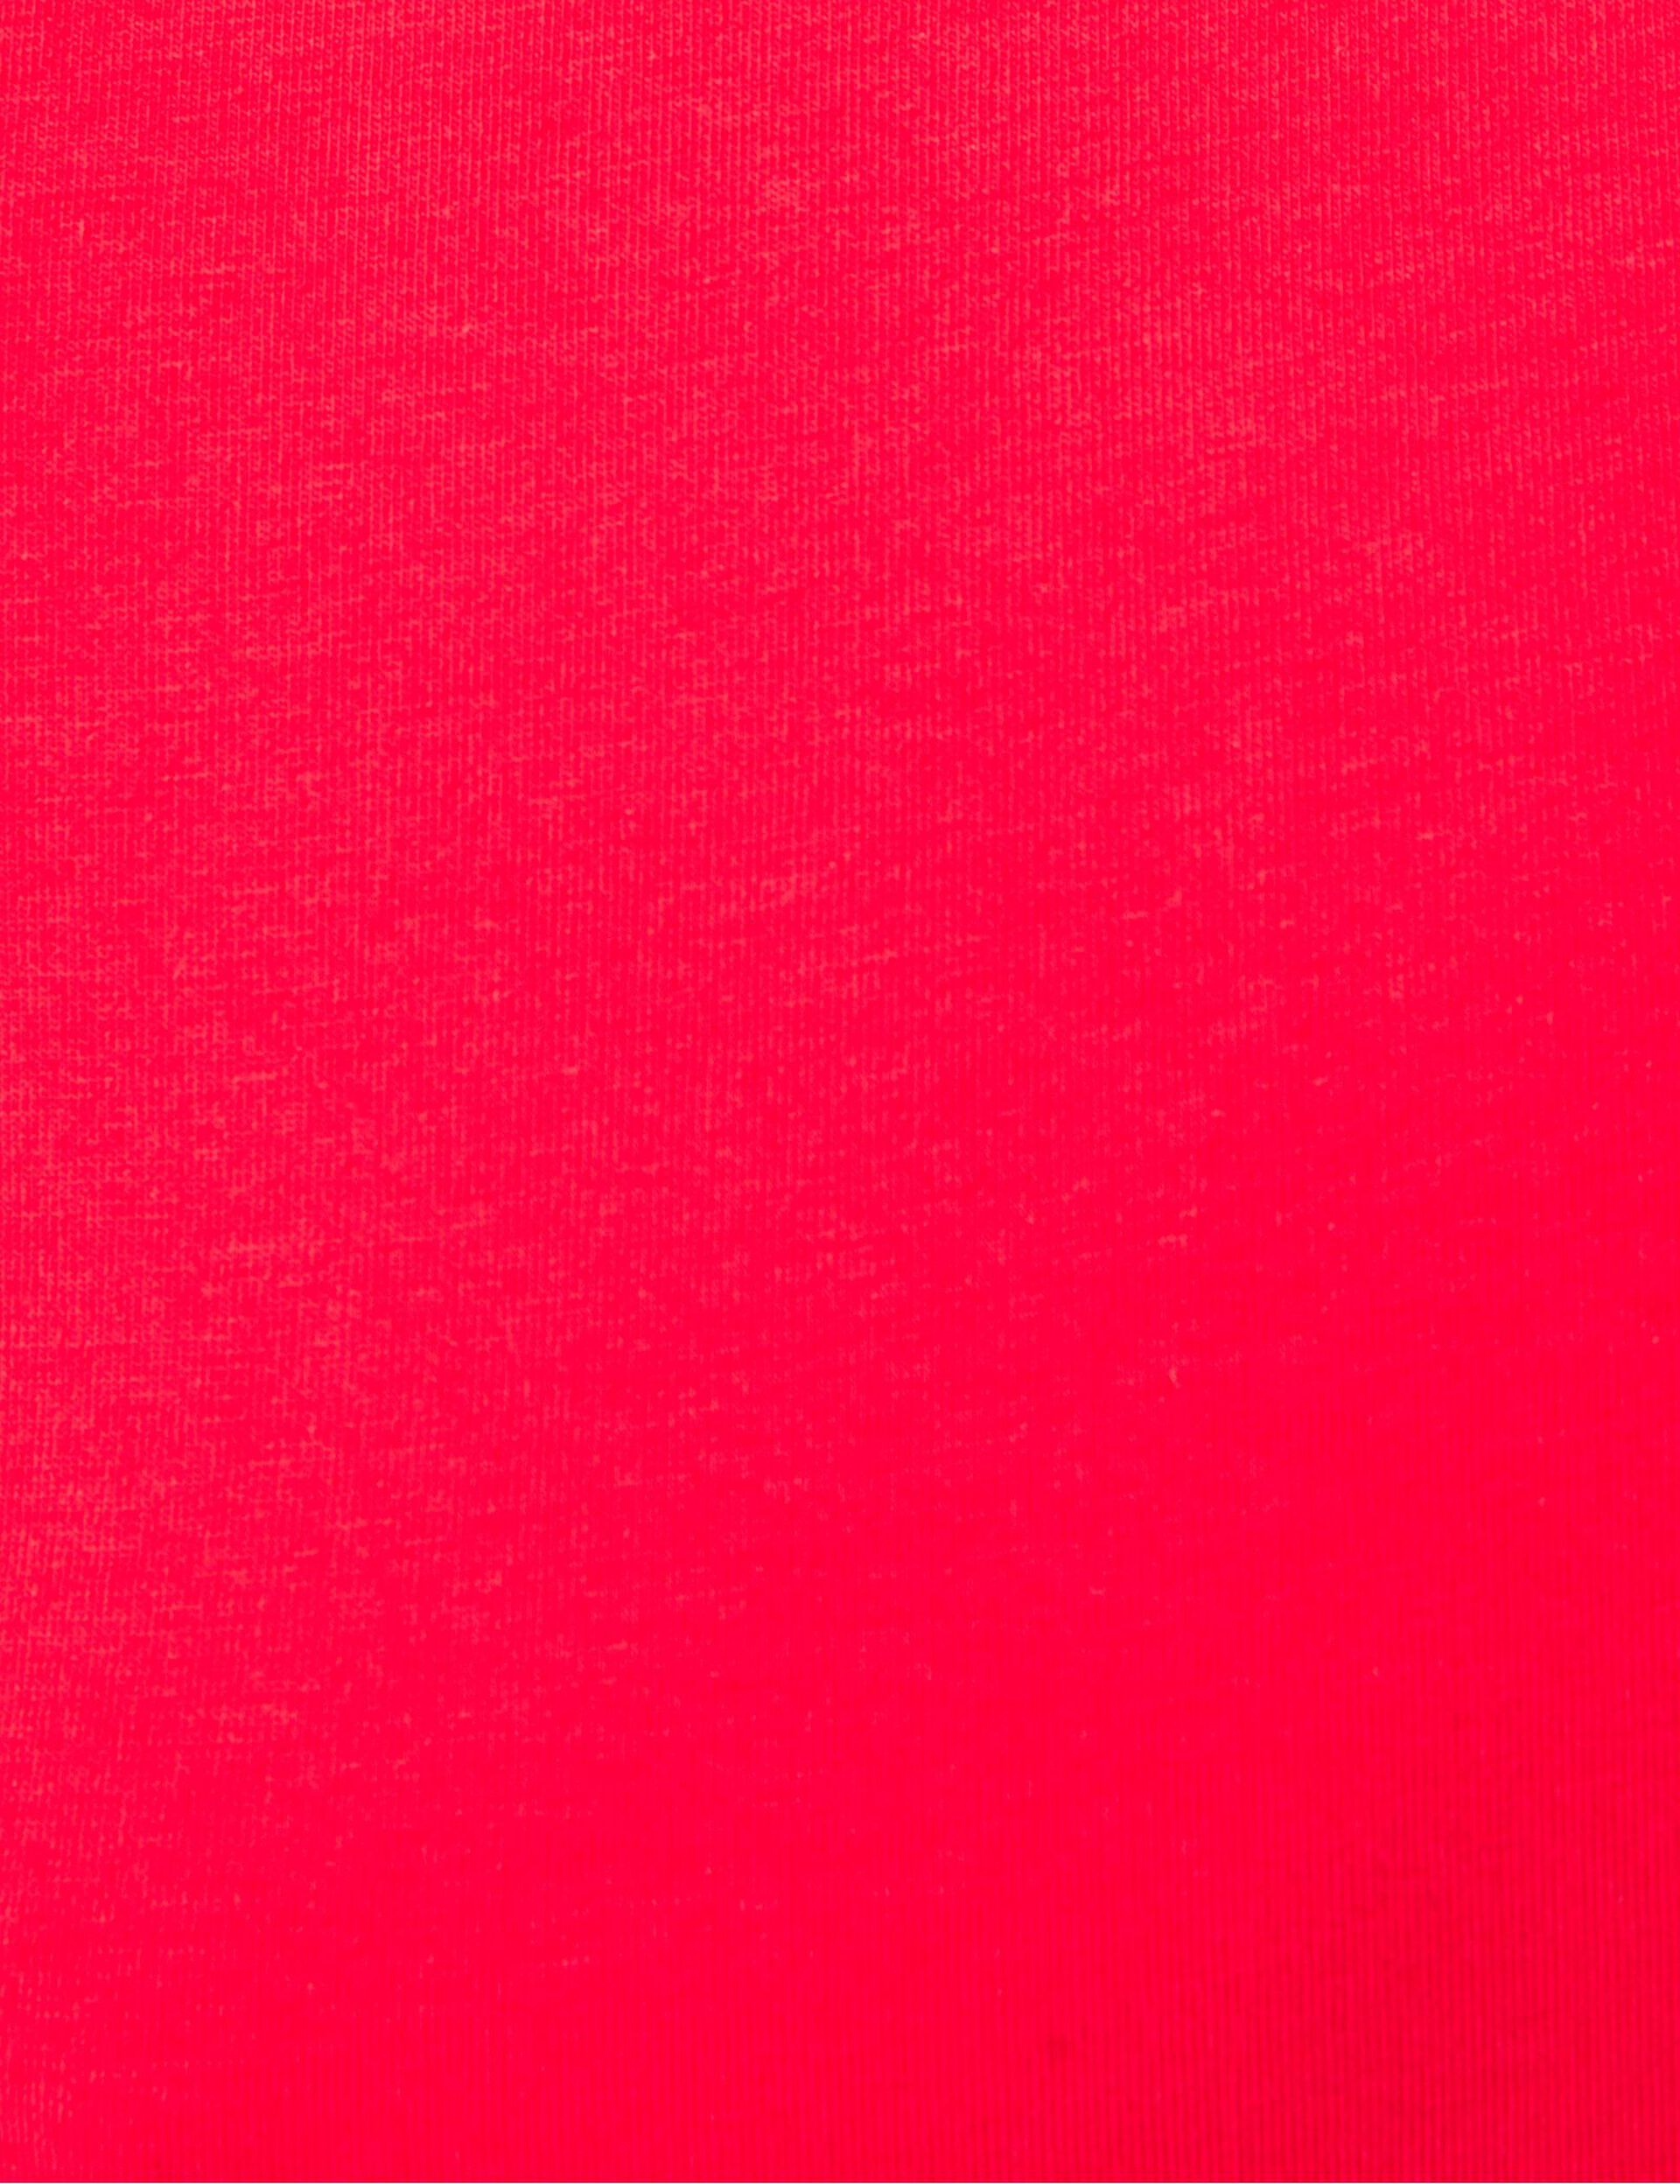 Tee-shirt basic rouge